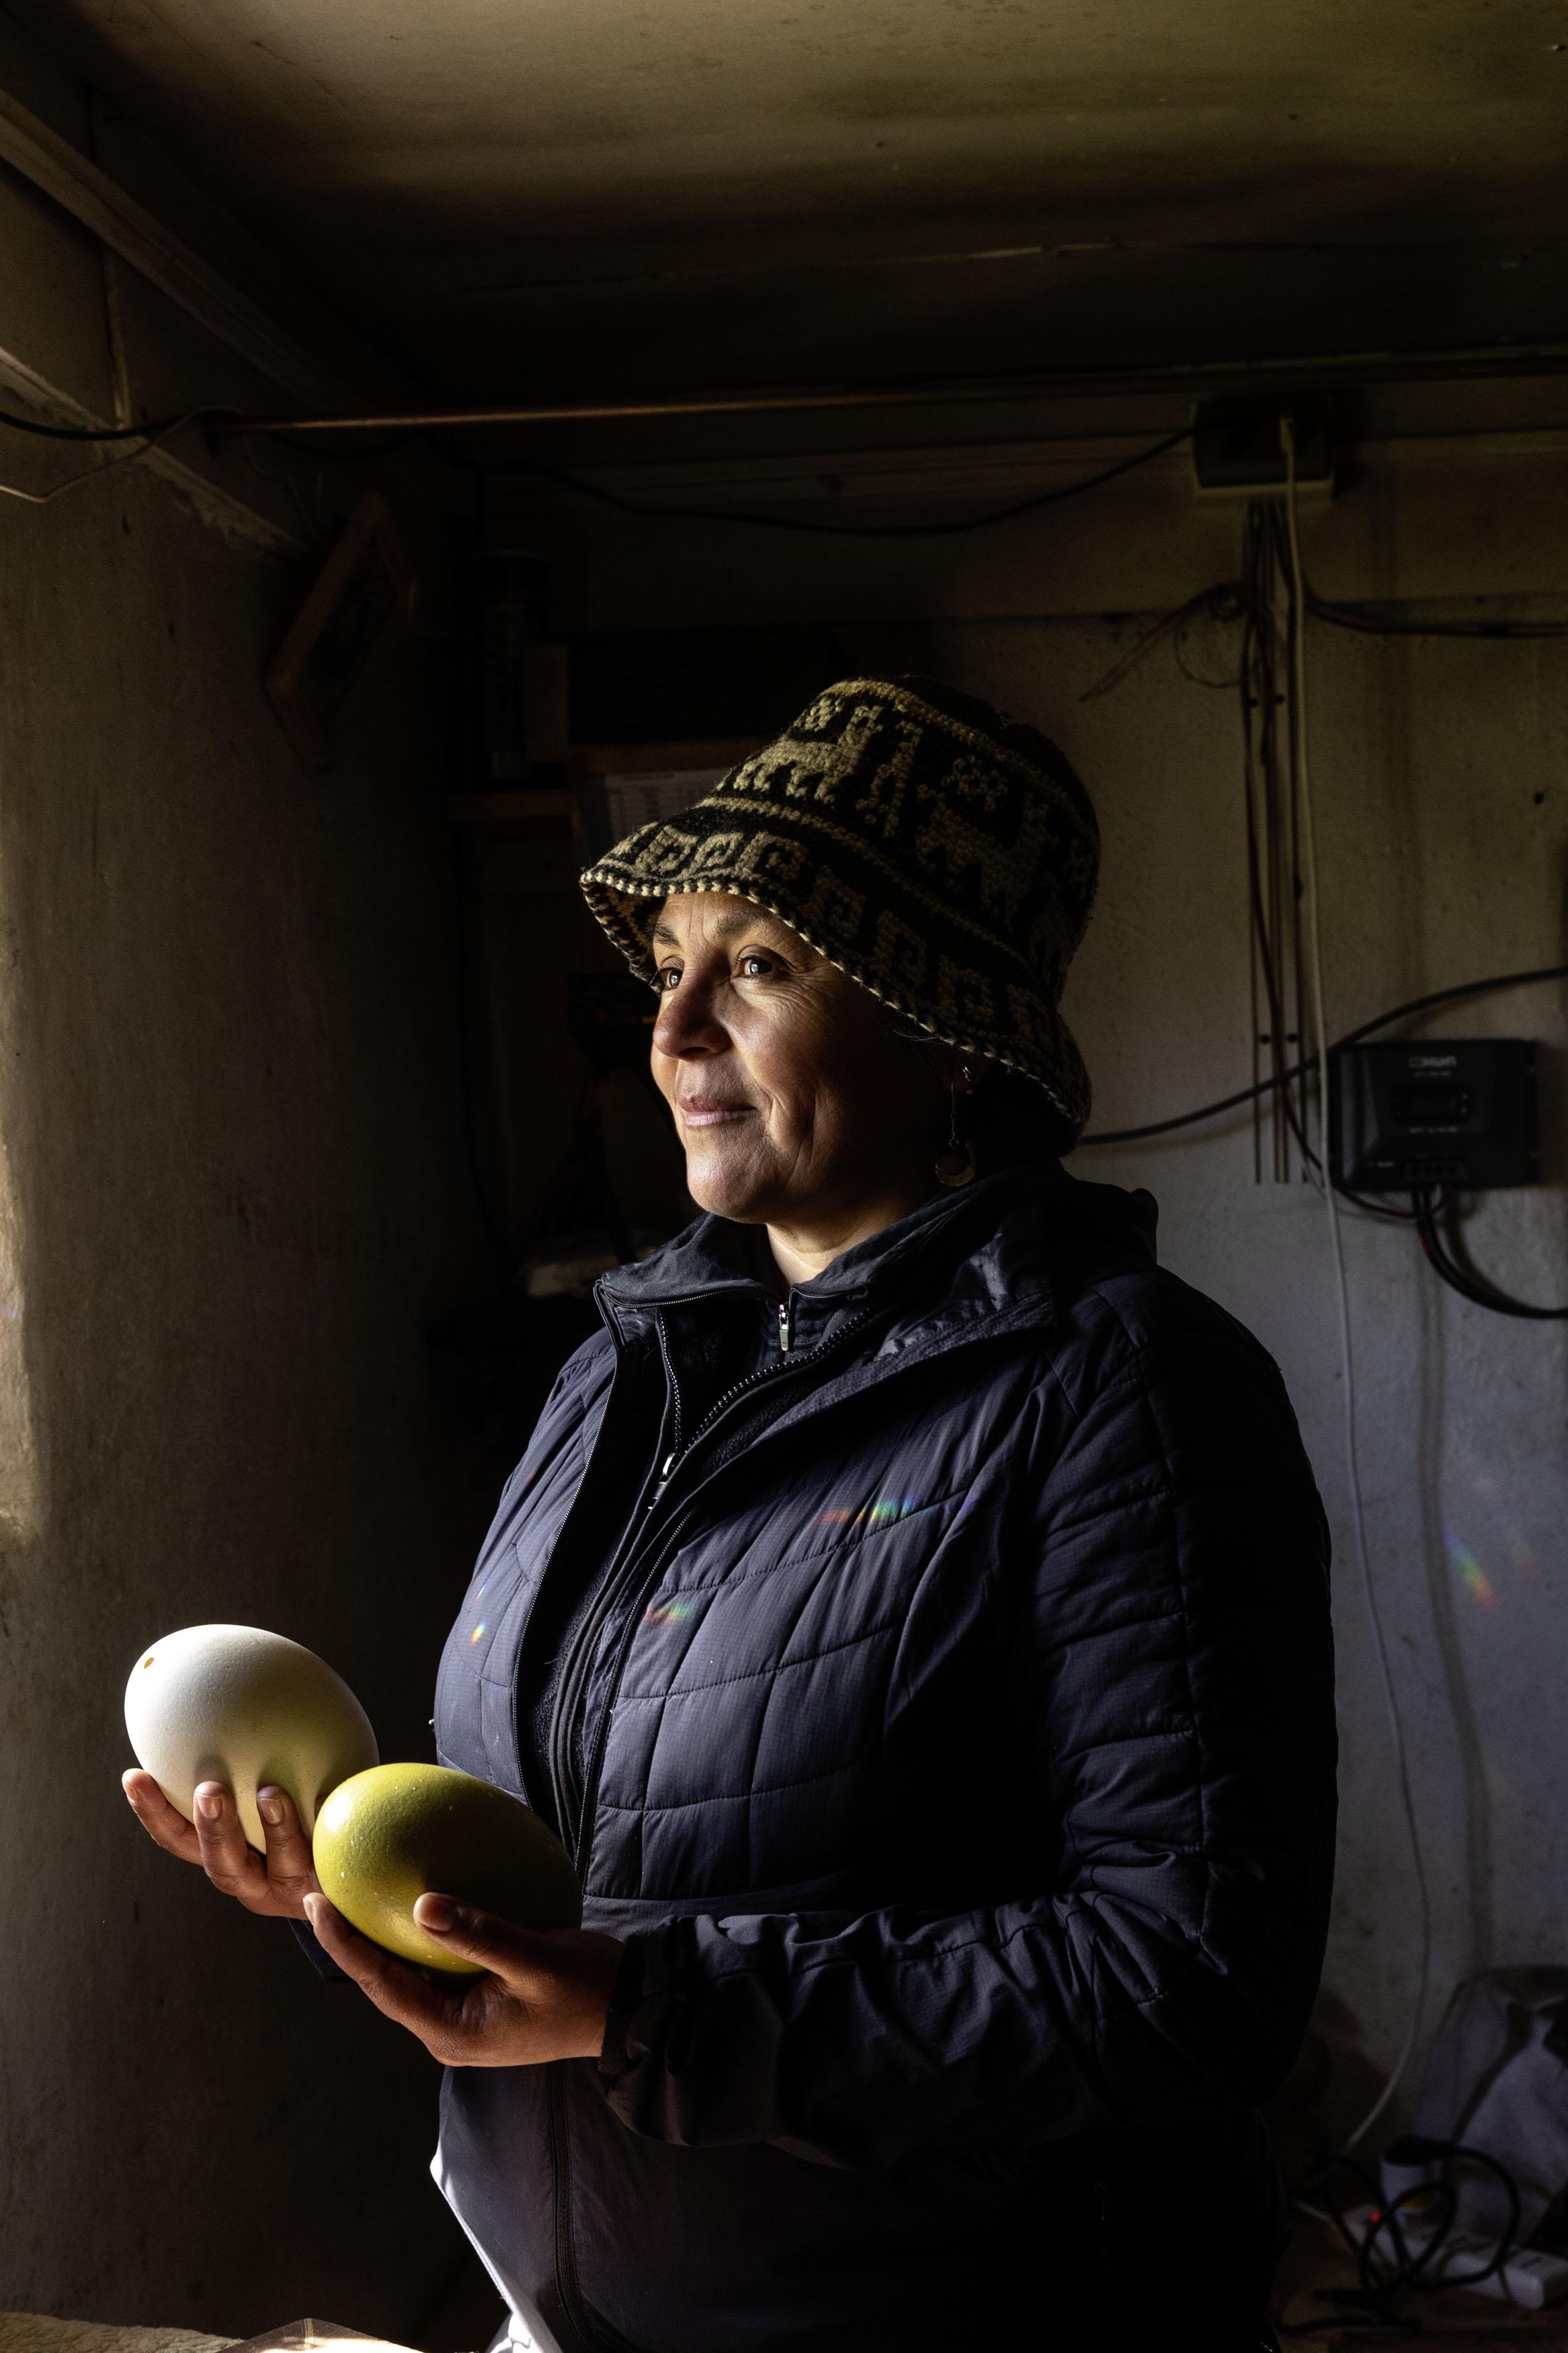 Alejandra Saavedra, responsable du Ñandú Reproduction Center dans le Patagonia National Park au Chili, tient dans les mains un œuf vert. Ces œufs sont utilisés pour stimuler les nandous à pondre.
© Rolex/Sofía López Mañan